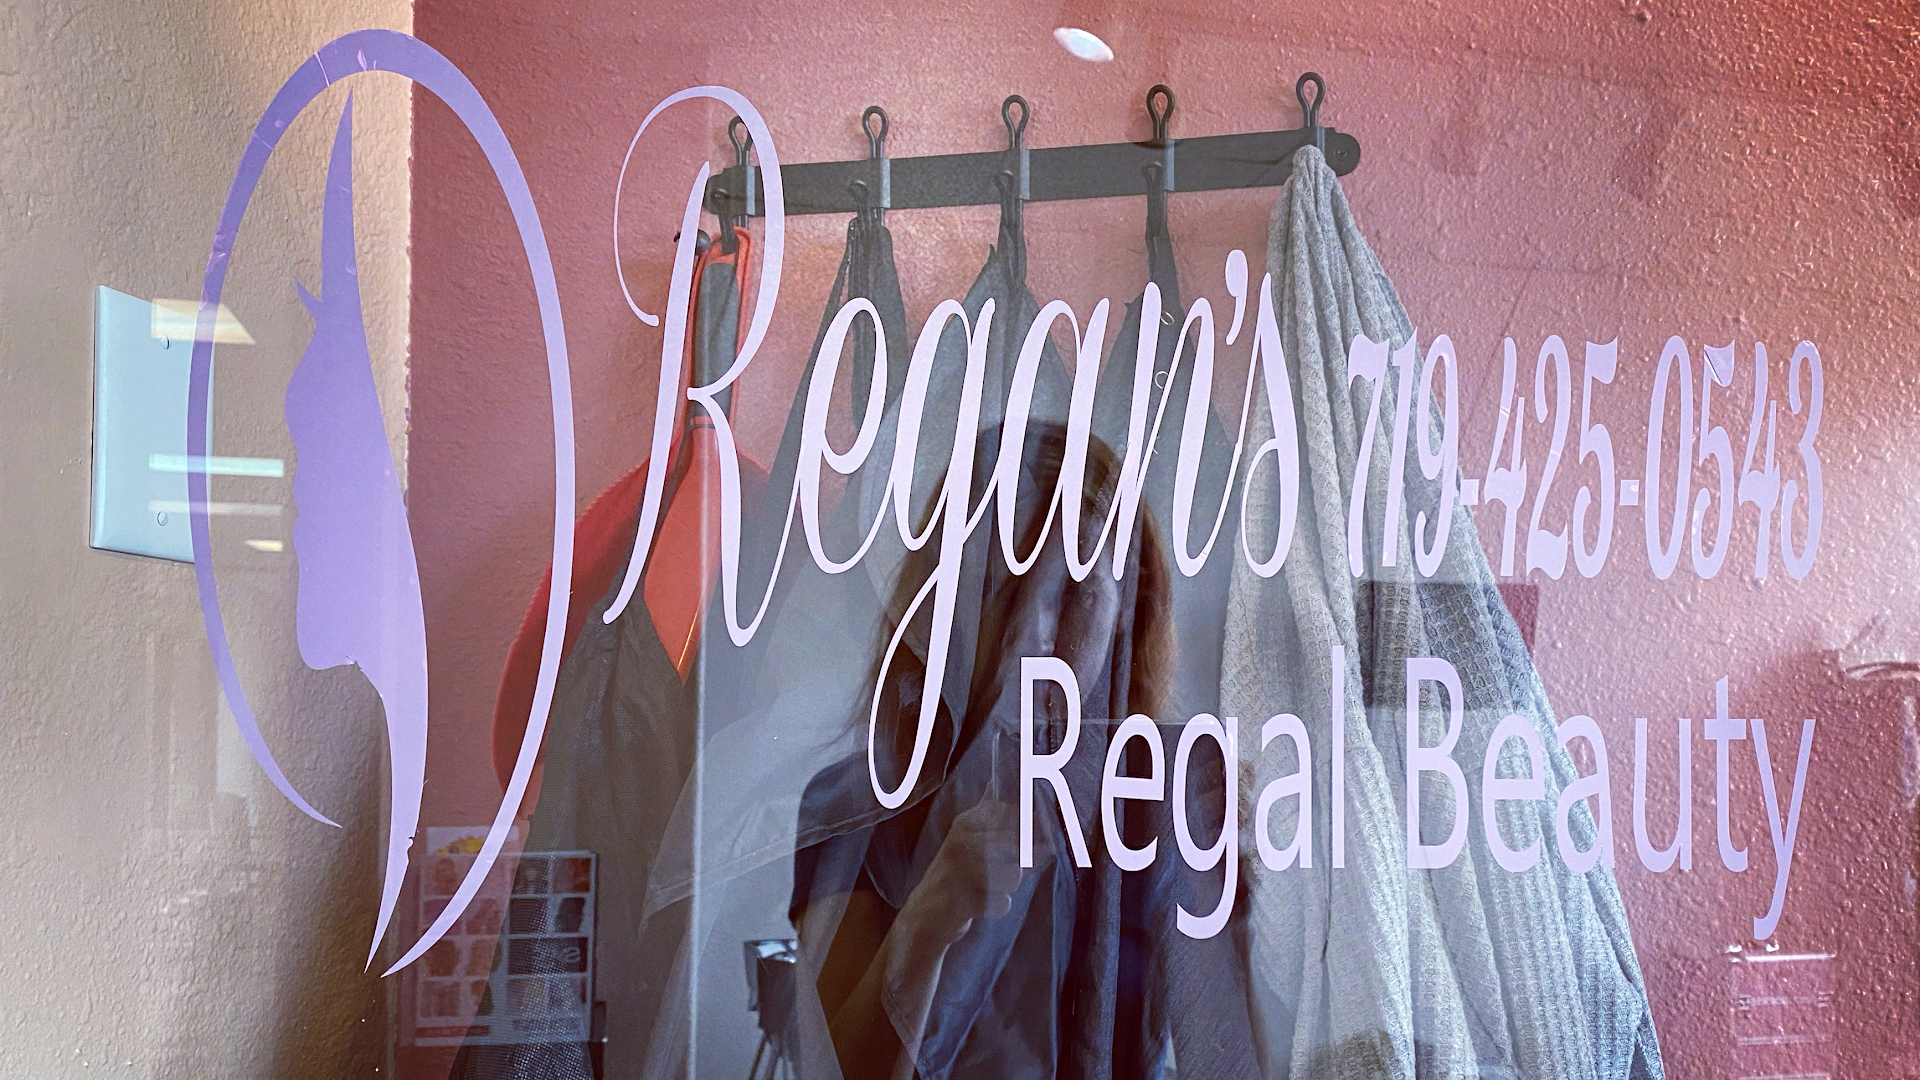 Regan's Regal Beauty